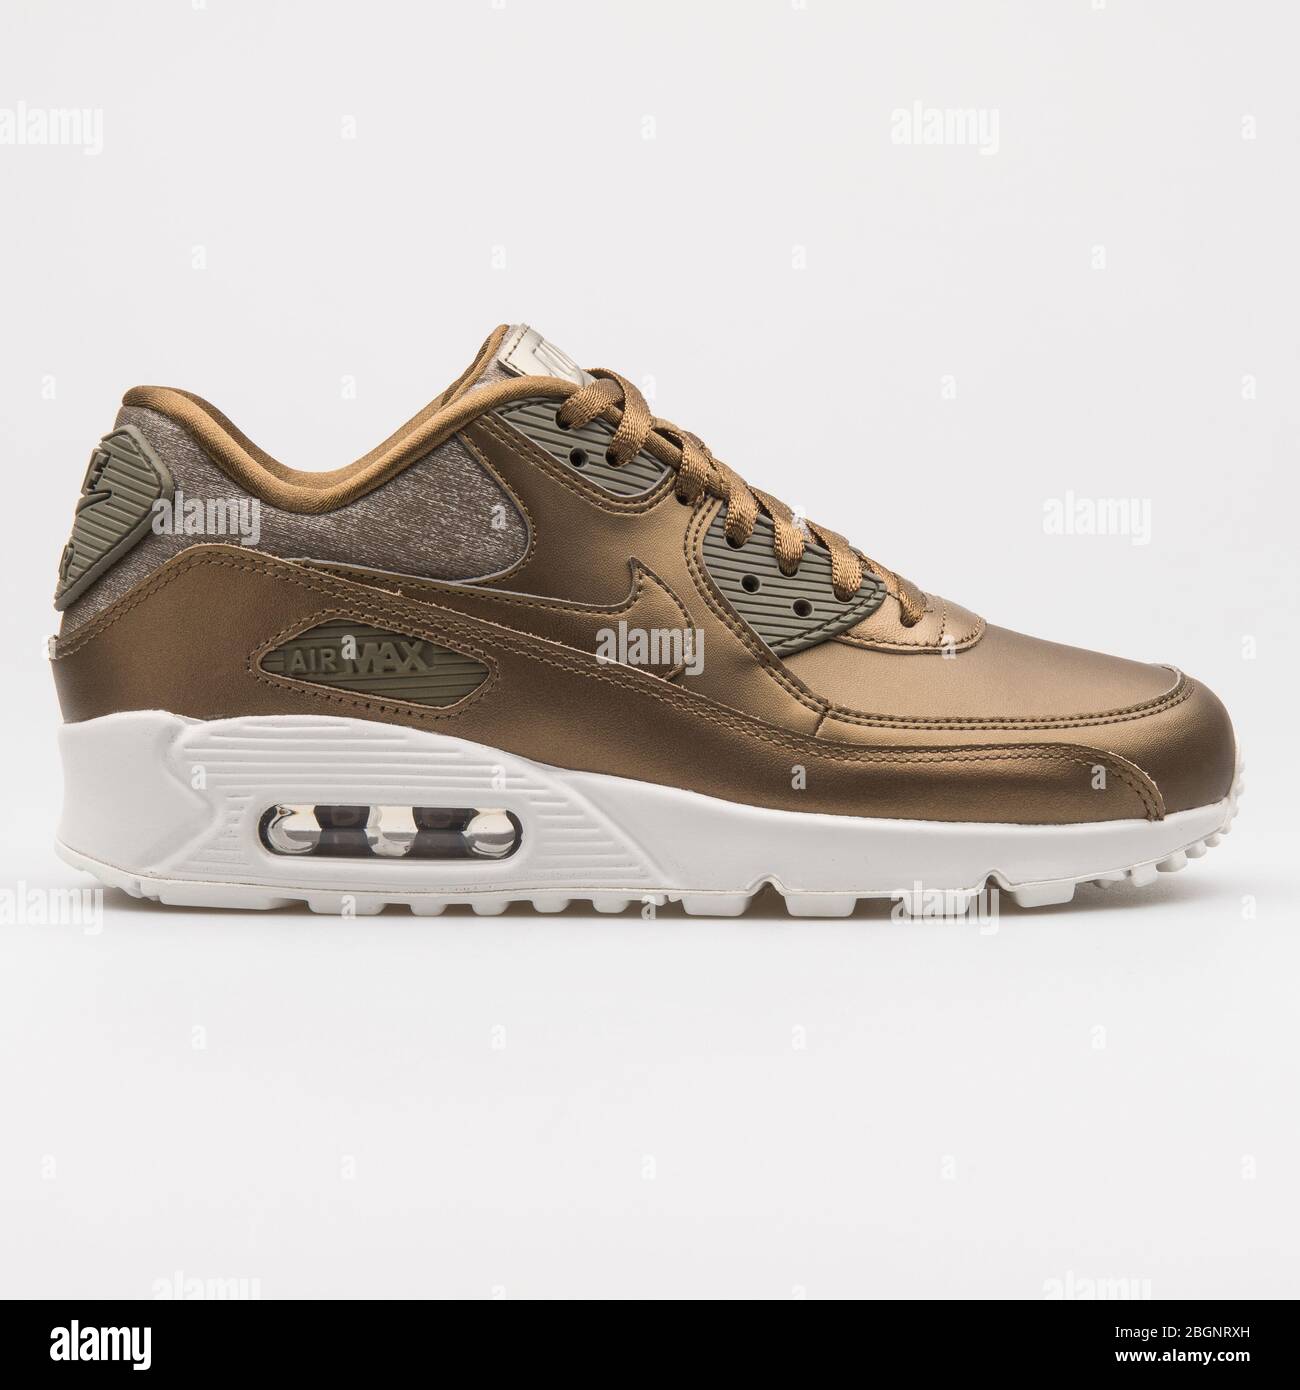 VIENNE, AUTRICHE - 24 AOÛT 2017 : sneaker Nike Air Max 90 Premium en bronze  métallique sur fond blanc Photo Stock - Alamy